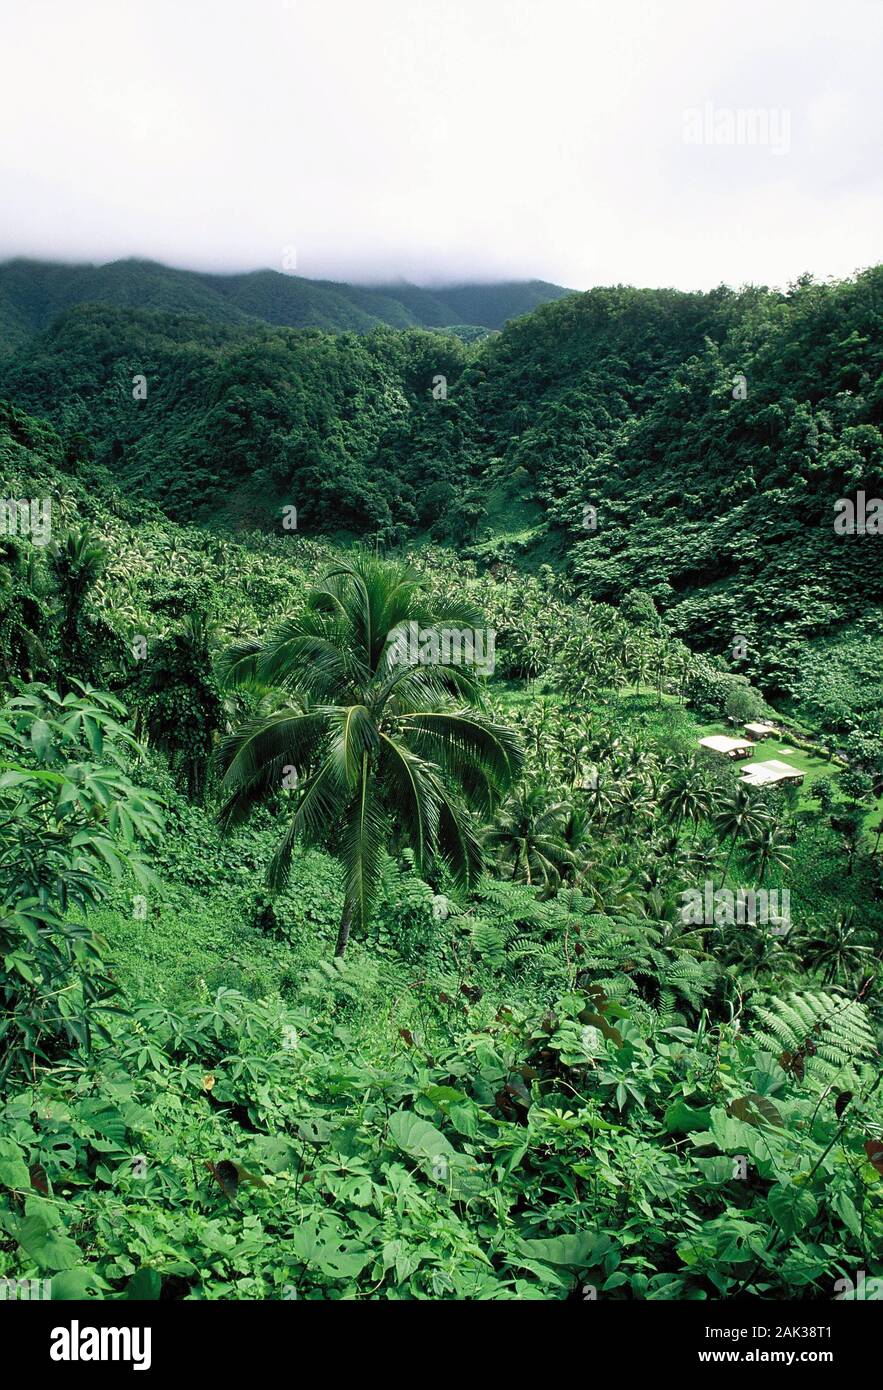 Dichter Regenwald erstreckt sich auf die Hügel des Bouma National Park auf der Insel wenn Taveuni. Taveuni ist die drittgrößte Insel der Fidschi Inseln. Die Stockfoto